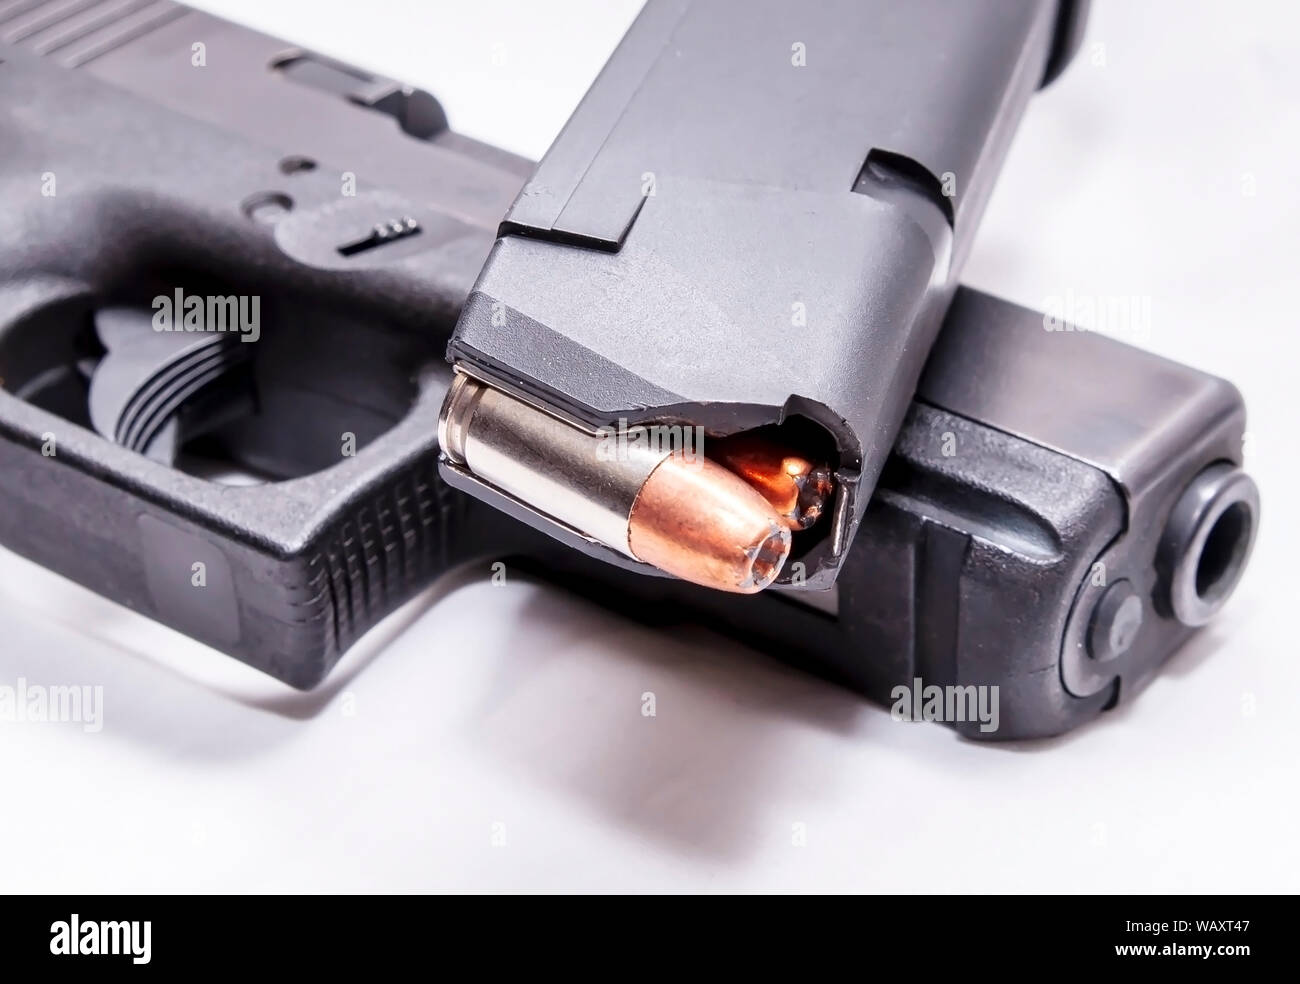 Un pistolet 9 mm chargé magazine au sommet d'un pistolet 9 mm noir sur fond blanc Banque D'Images